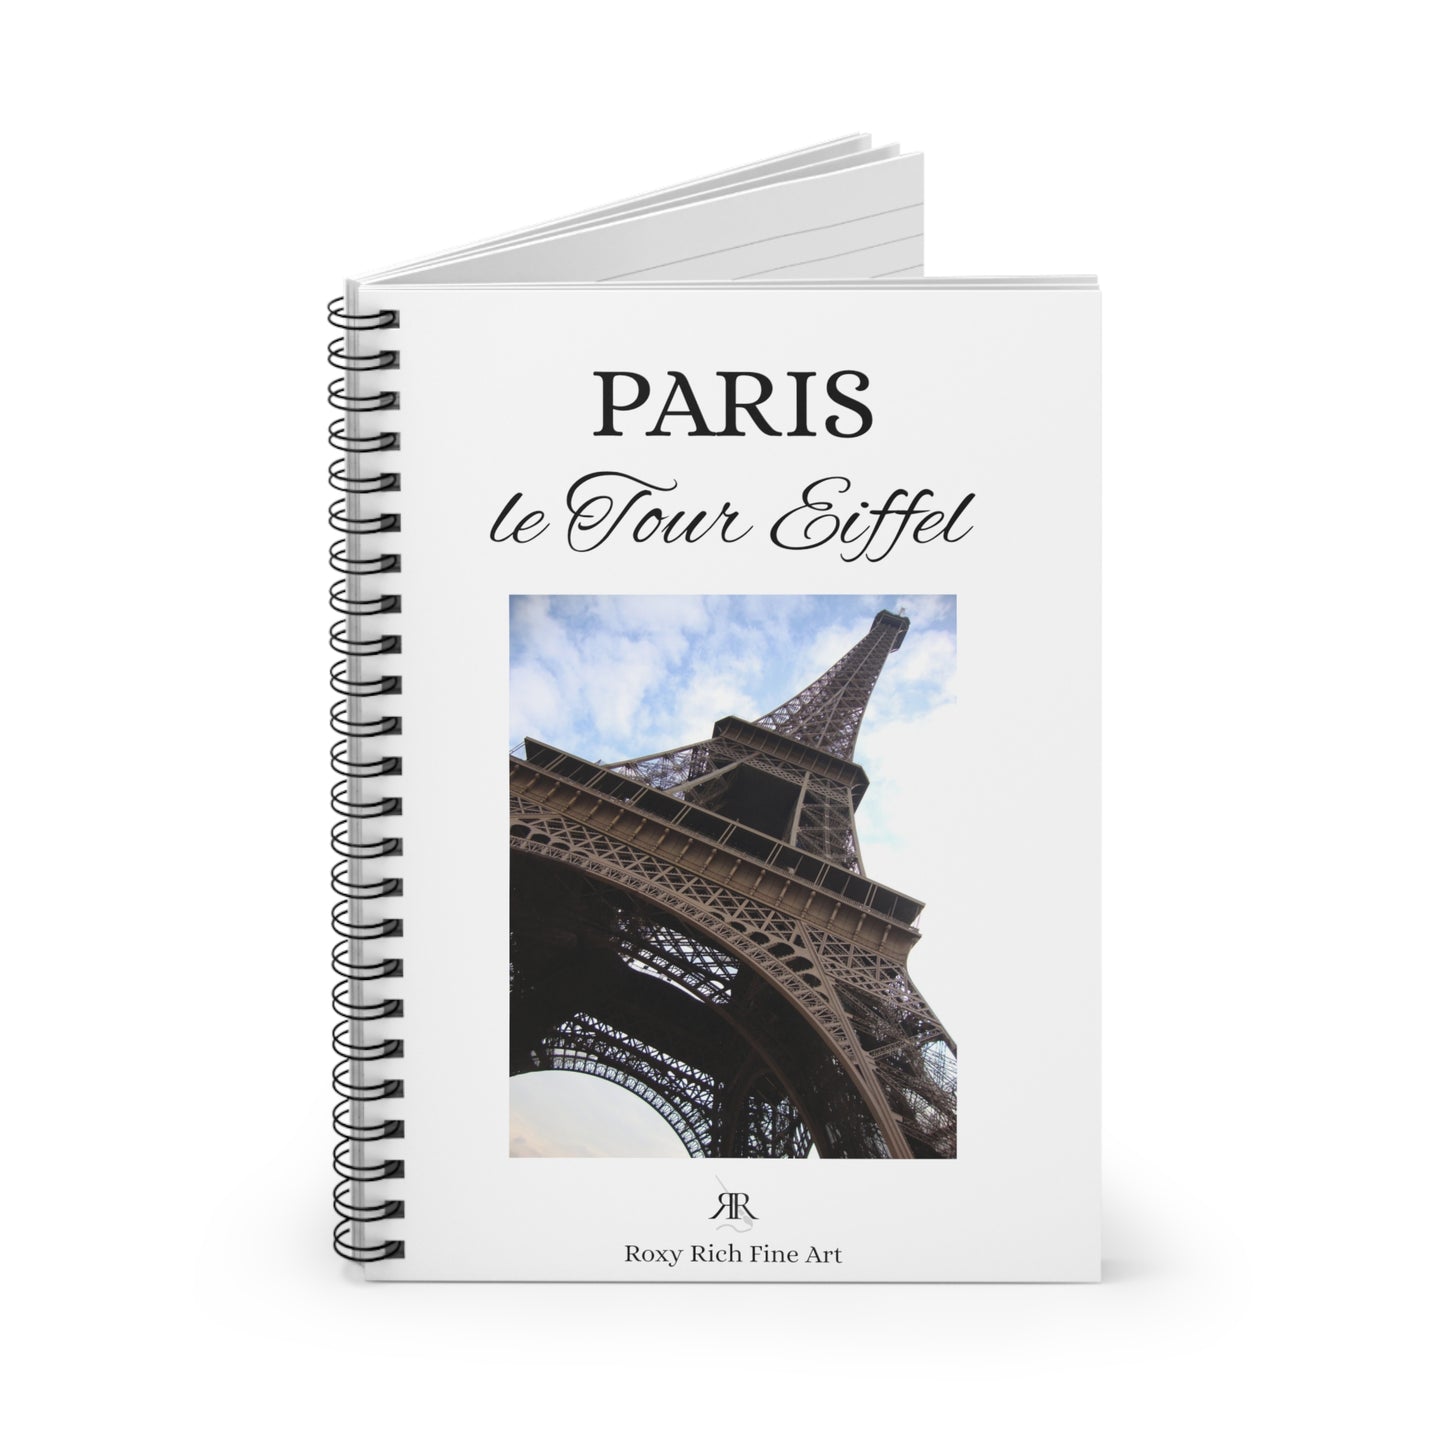 Paris "le Tour Eiffel" La Tour Eiffel Cahier à spirale 